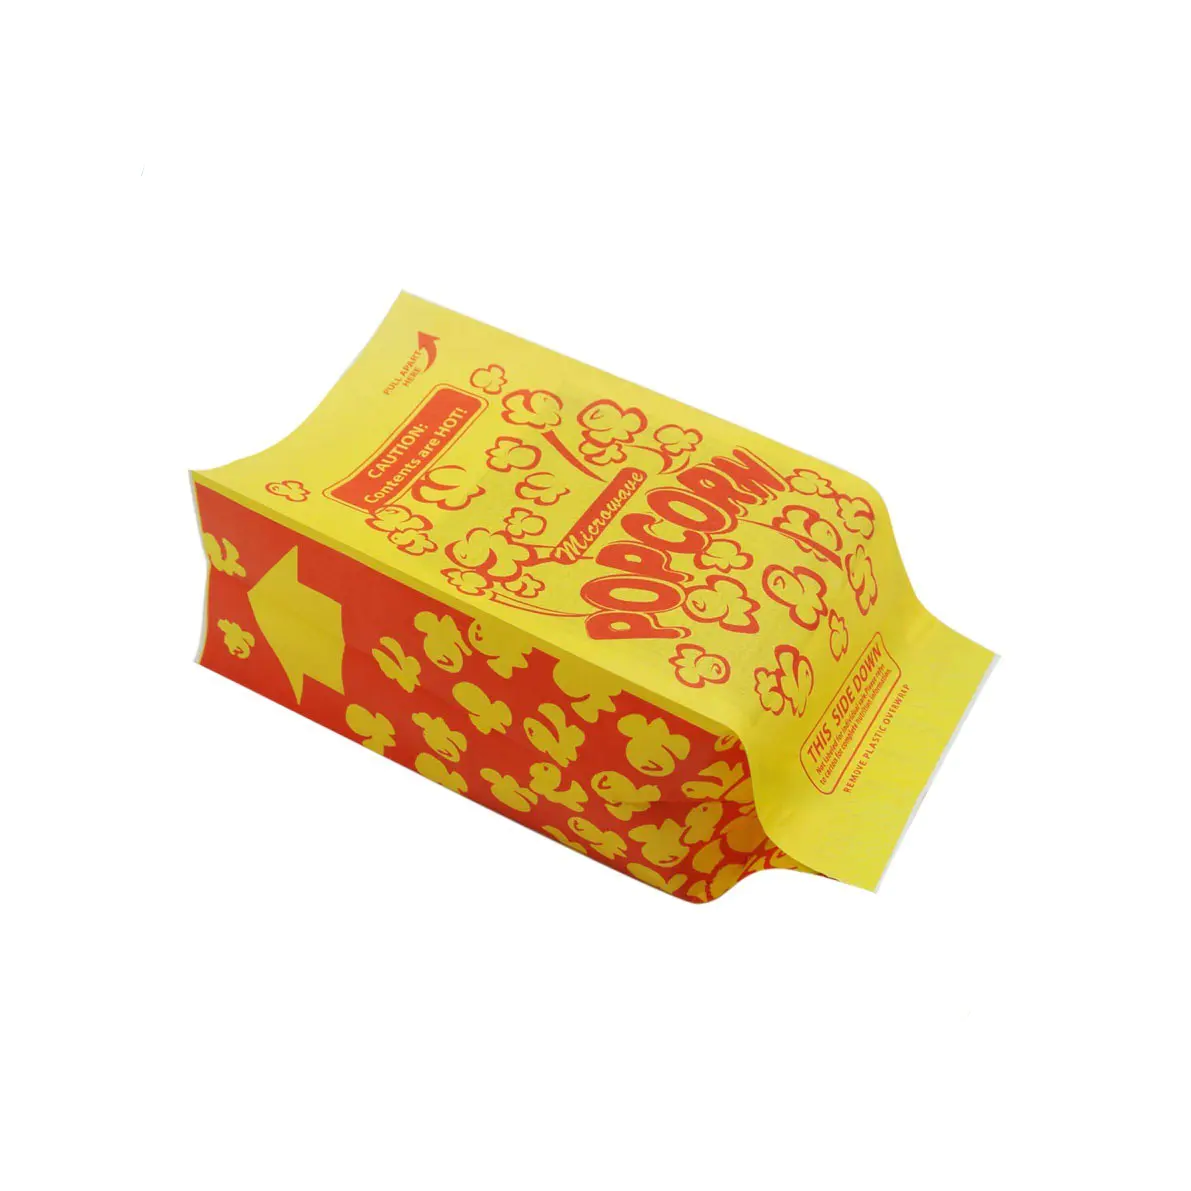 Factory price custom logo printed wholesale microwaveable popcorn packaging bags